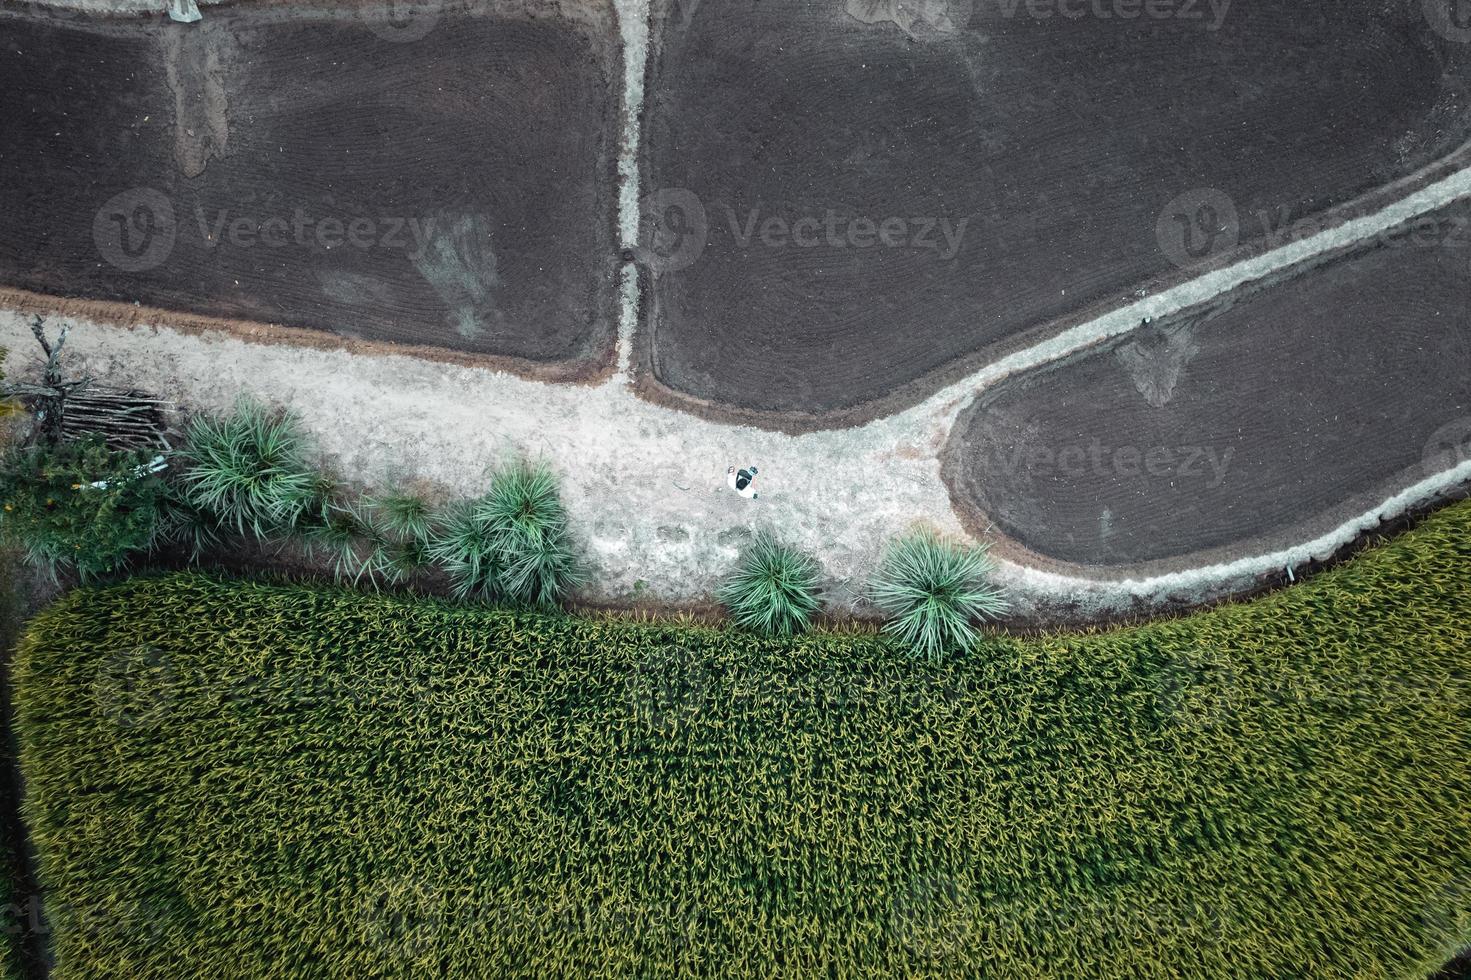 groene rijstvelden en landbouw vanuit een hoge hoek foto